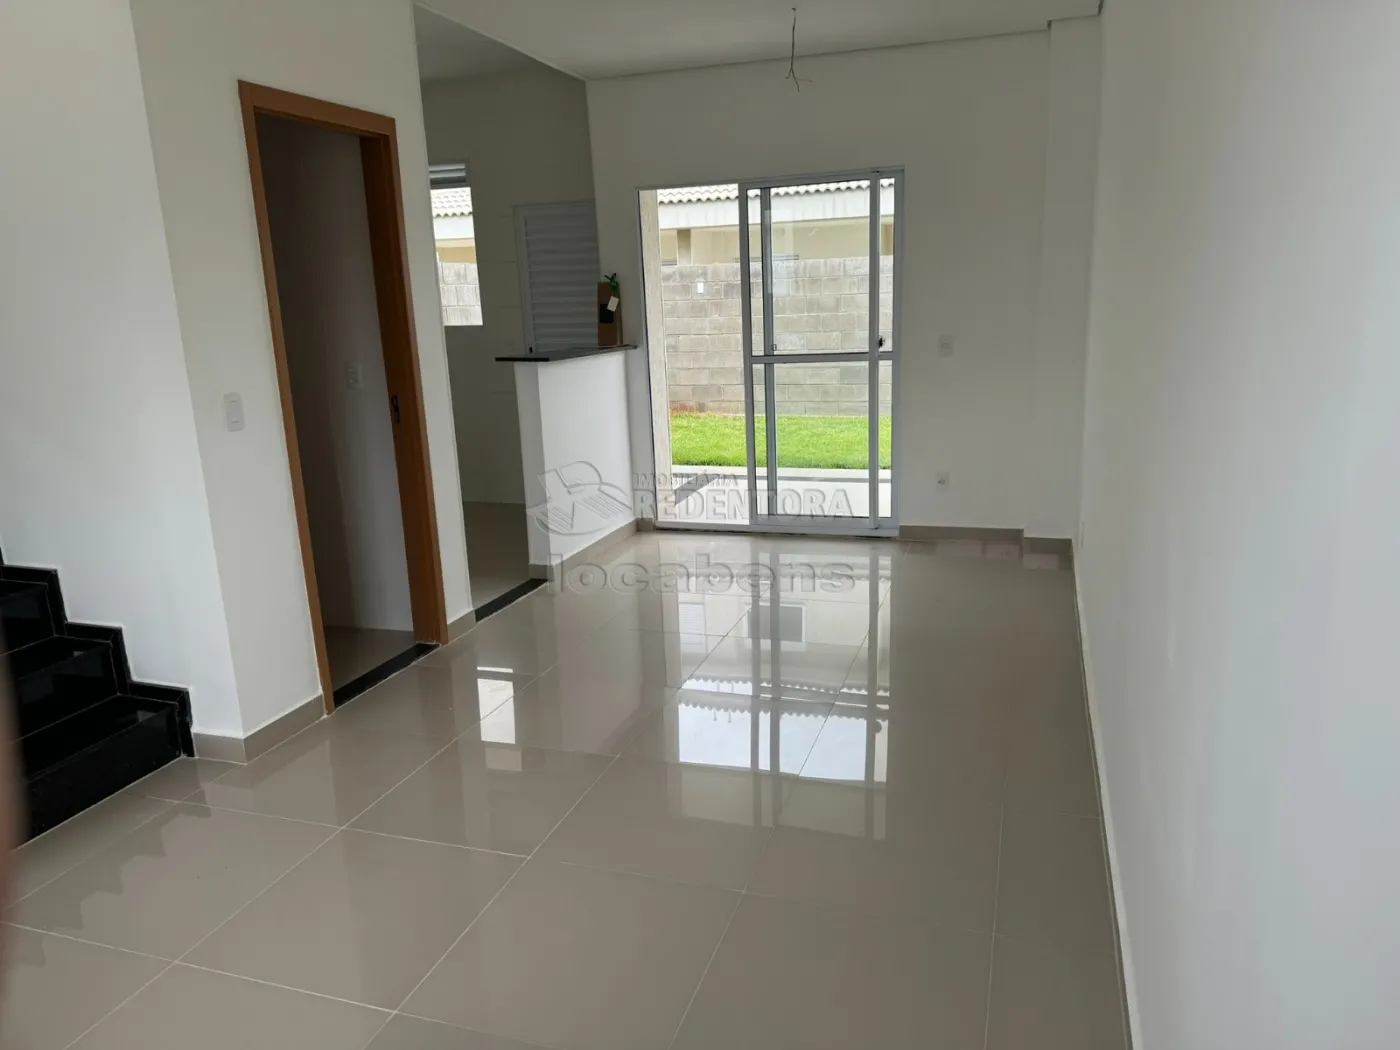 Comprar Casa / Condomínio em São José do Rio Preto R$ 485.000,00 - Foto 2